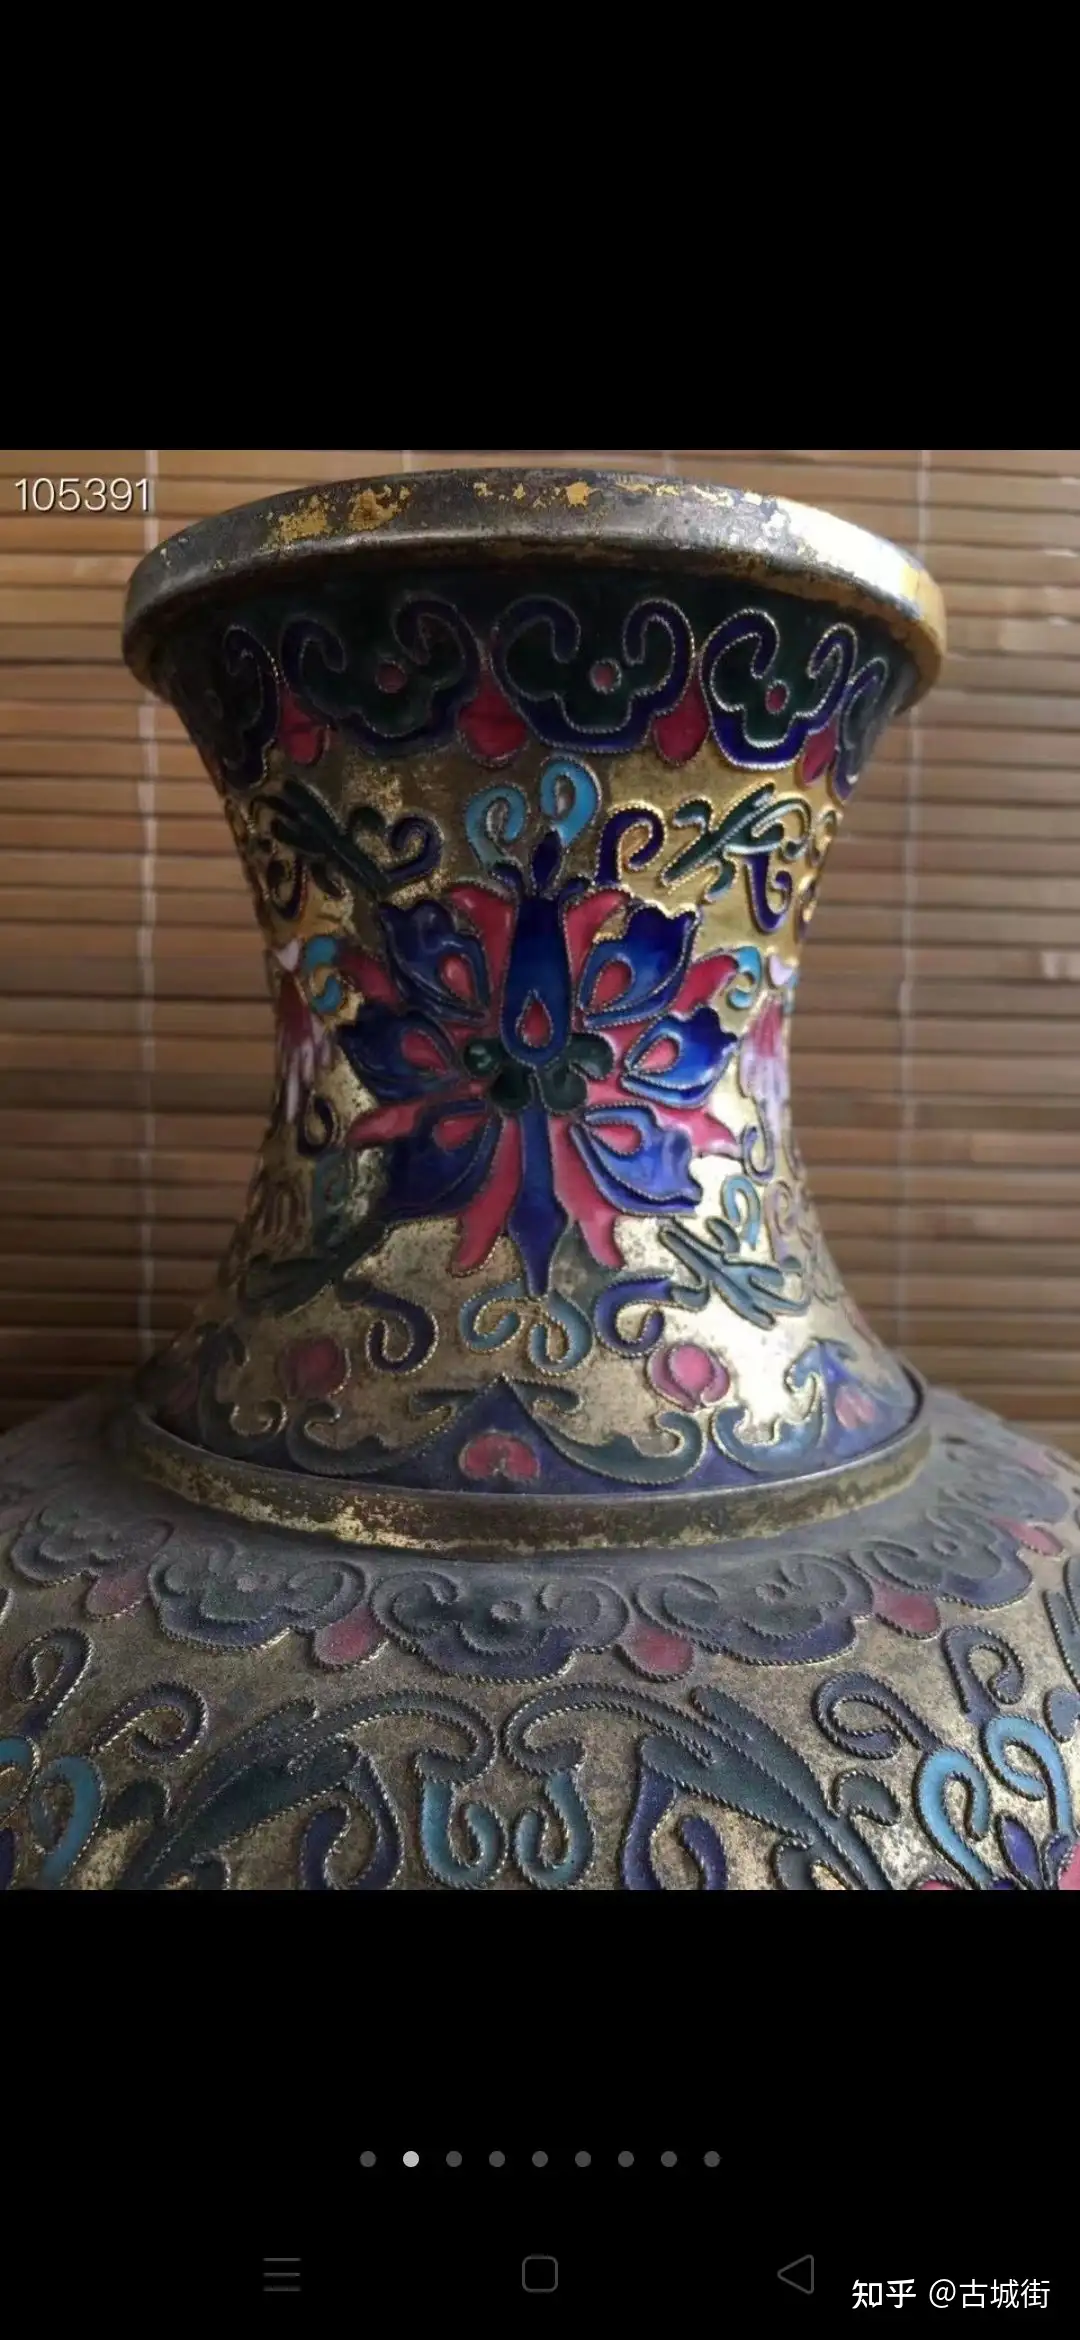 大清乾隆掐丝珐琅花瓶一对，铜胎，高级景泰蓝，皇室工艺精湛独到，复杂